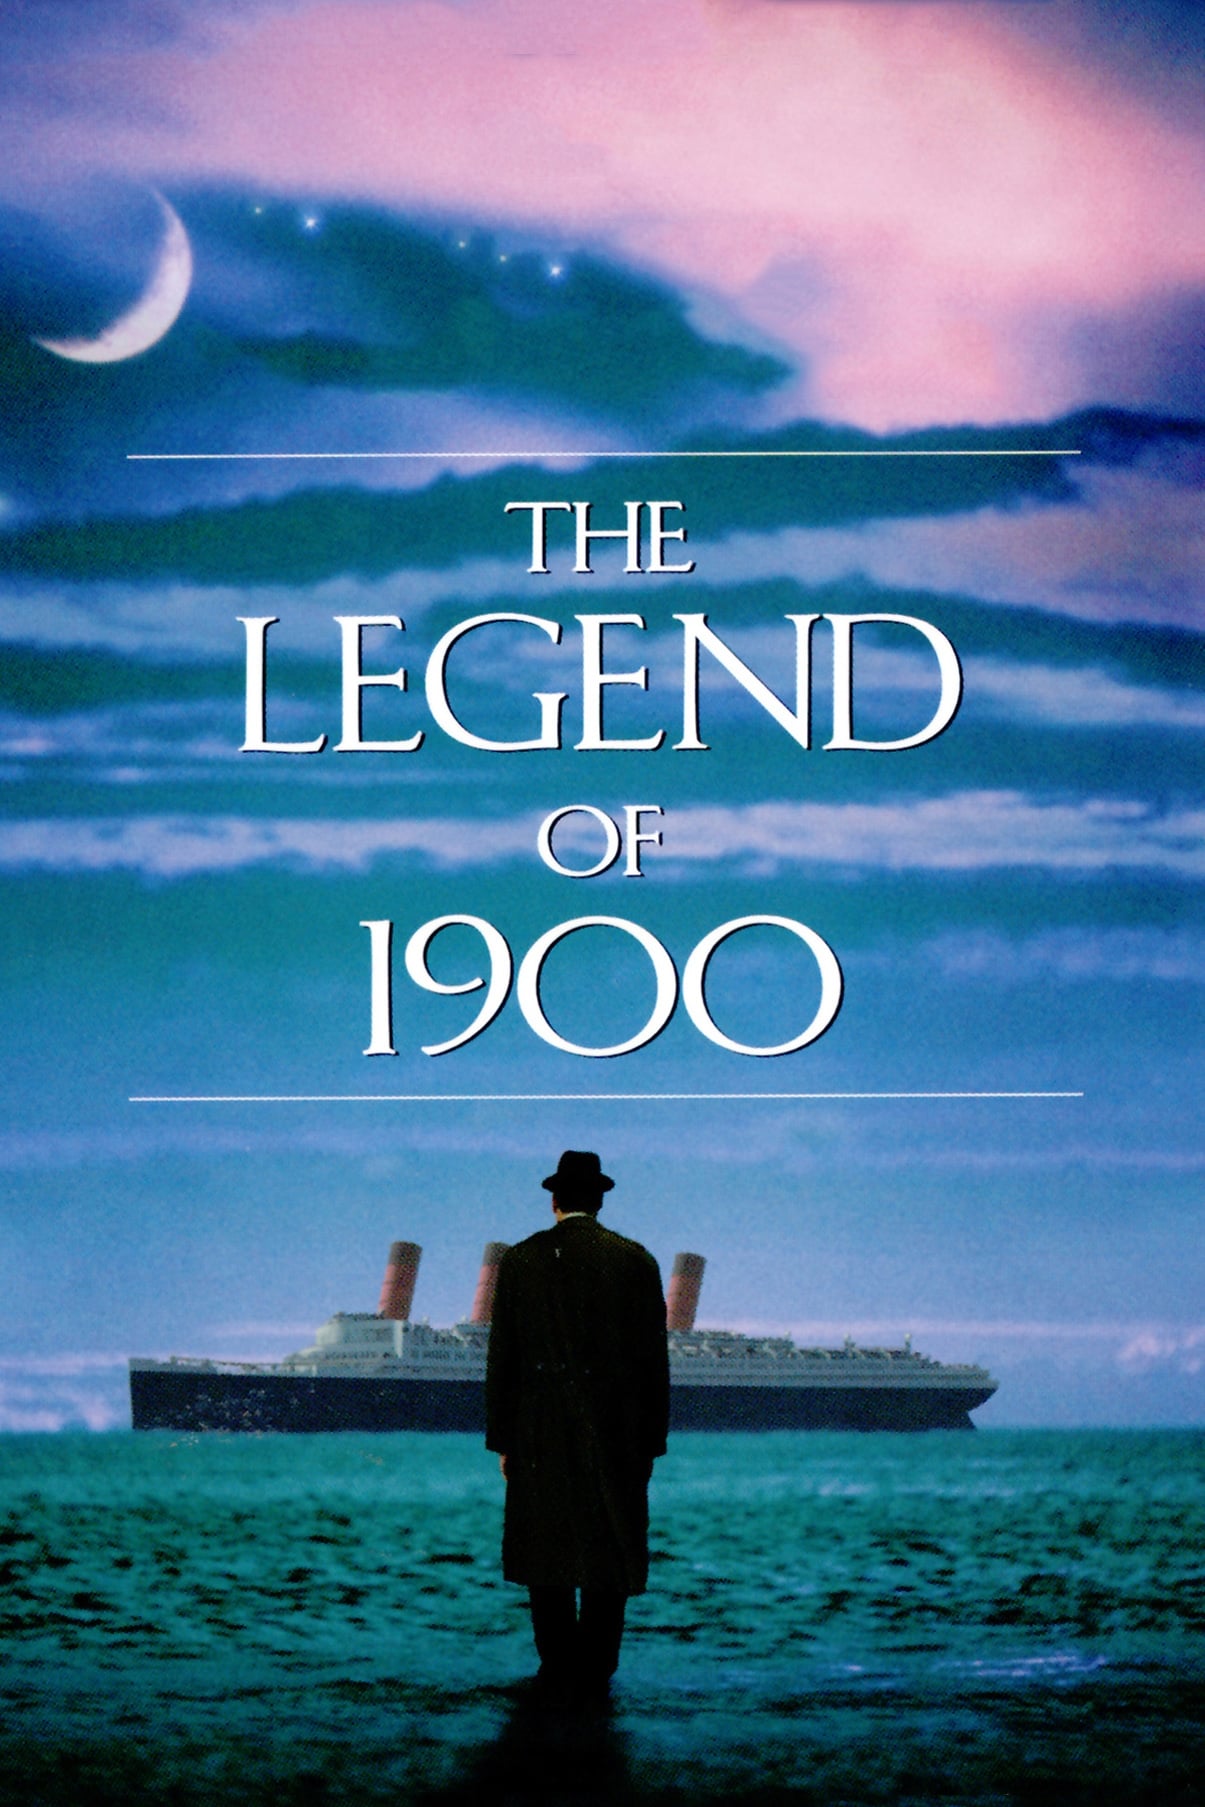 Die Legende vom Ozeanpianisten (1998)